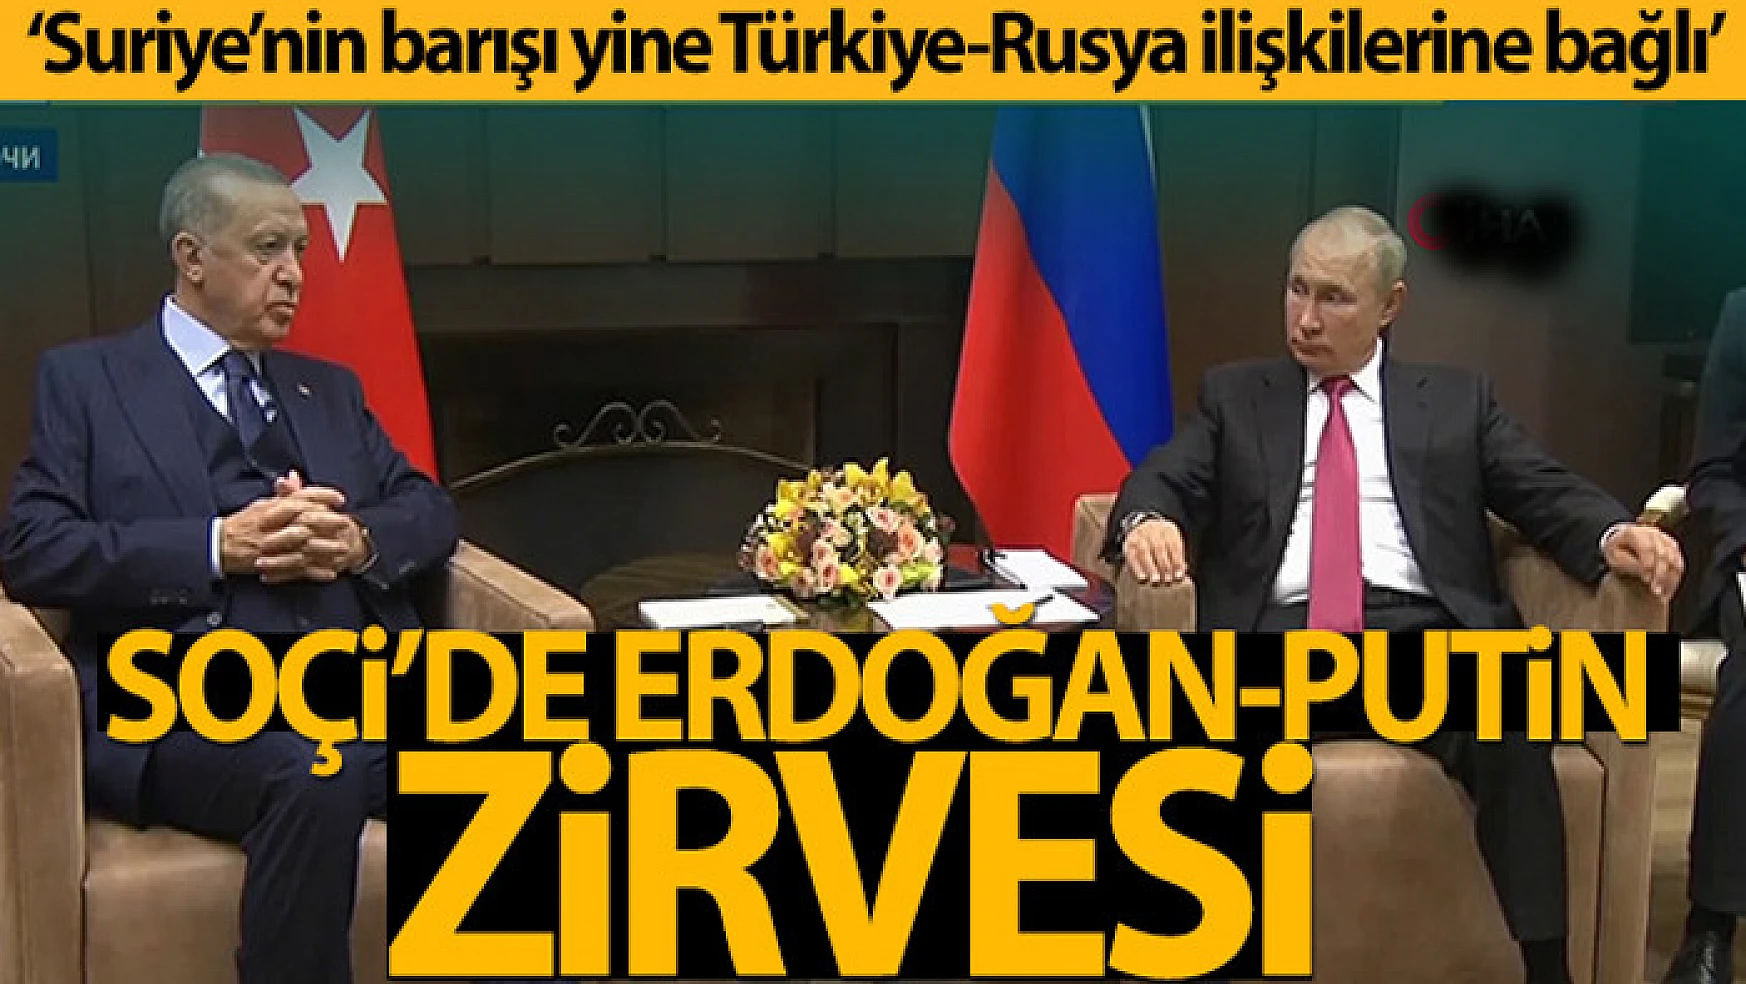 Cumhurbaşkanı Erdoğan: 'Suriye'nin barışı yine Türkiye-Rusya ilişkilerine bağlı'